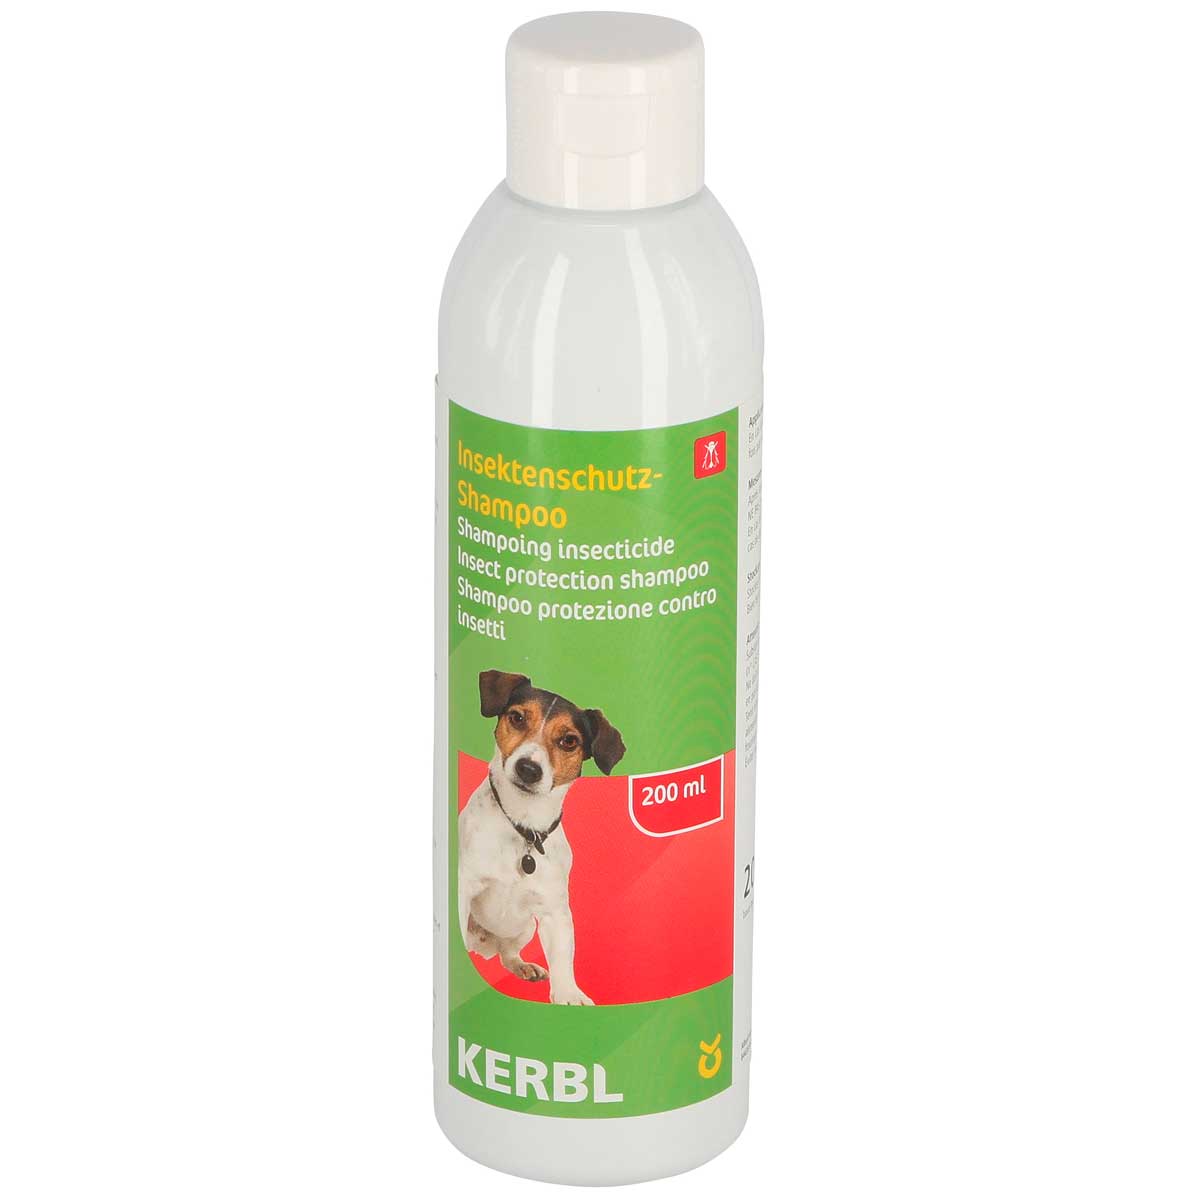 Kerbl Insektenschutz-Shampoo 200ml